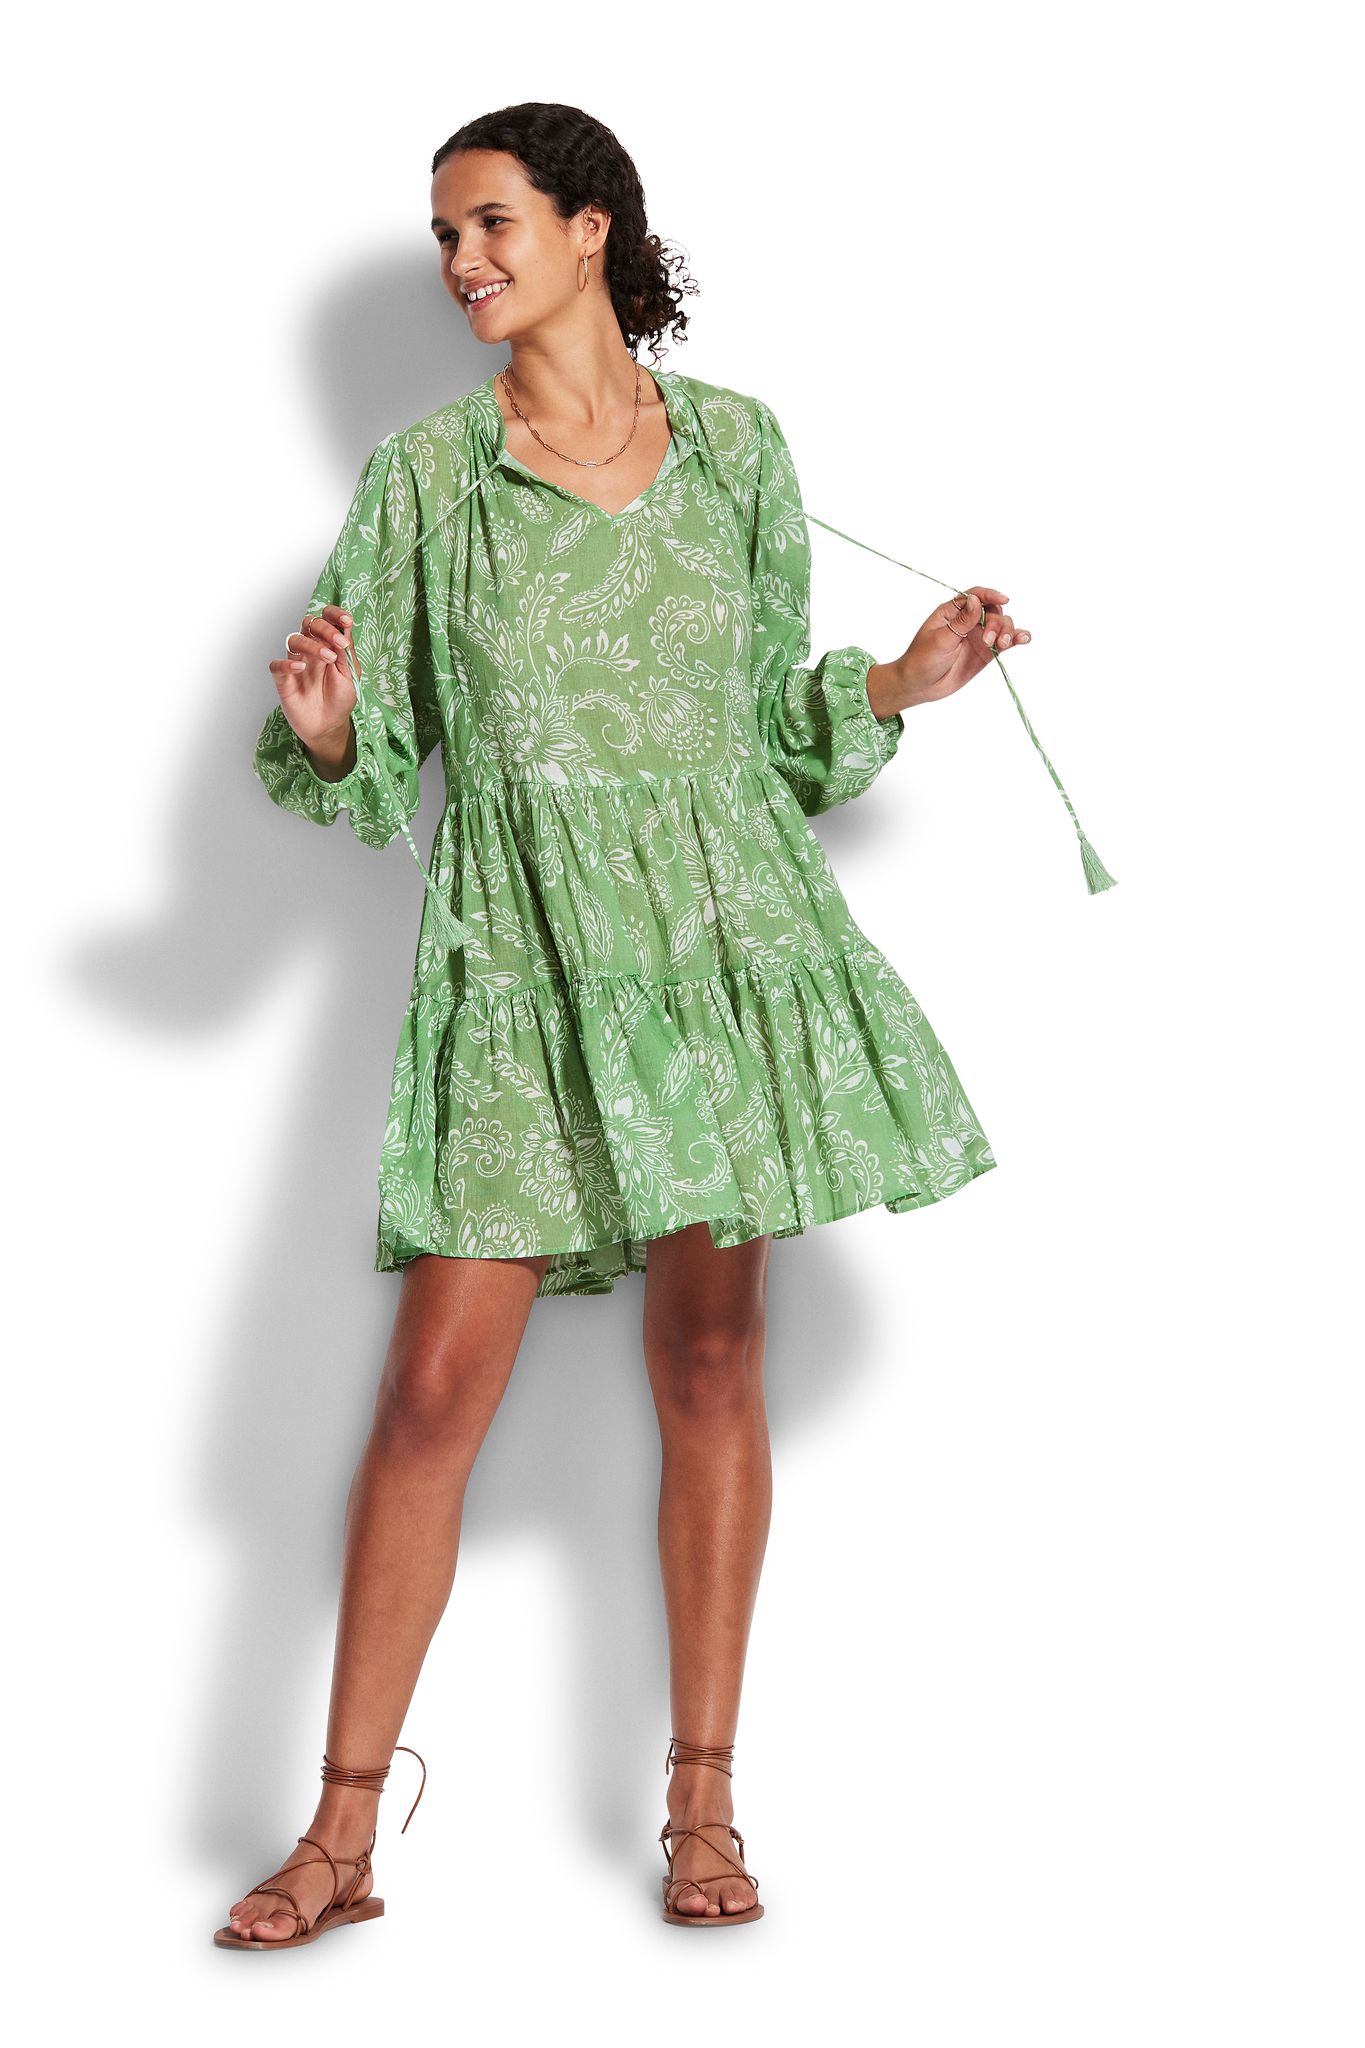 Короткое платье Seafolly Folklore 54603-DR - green tea 11 500 руб - купить в шоуруме, магазине, доставка с примеркой по России, Москве